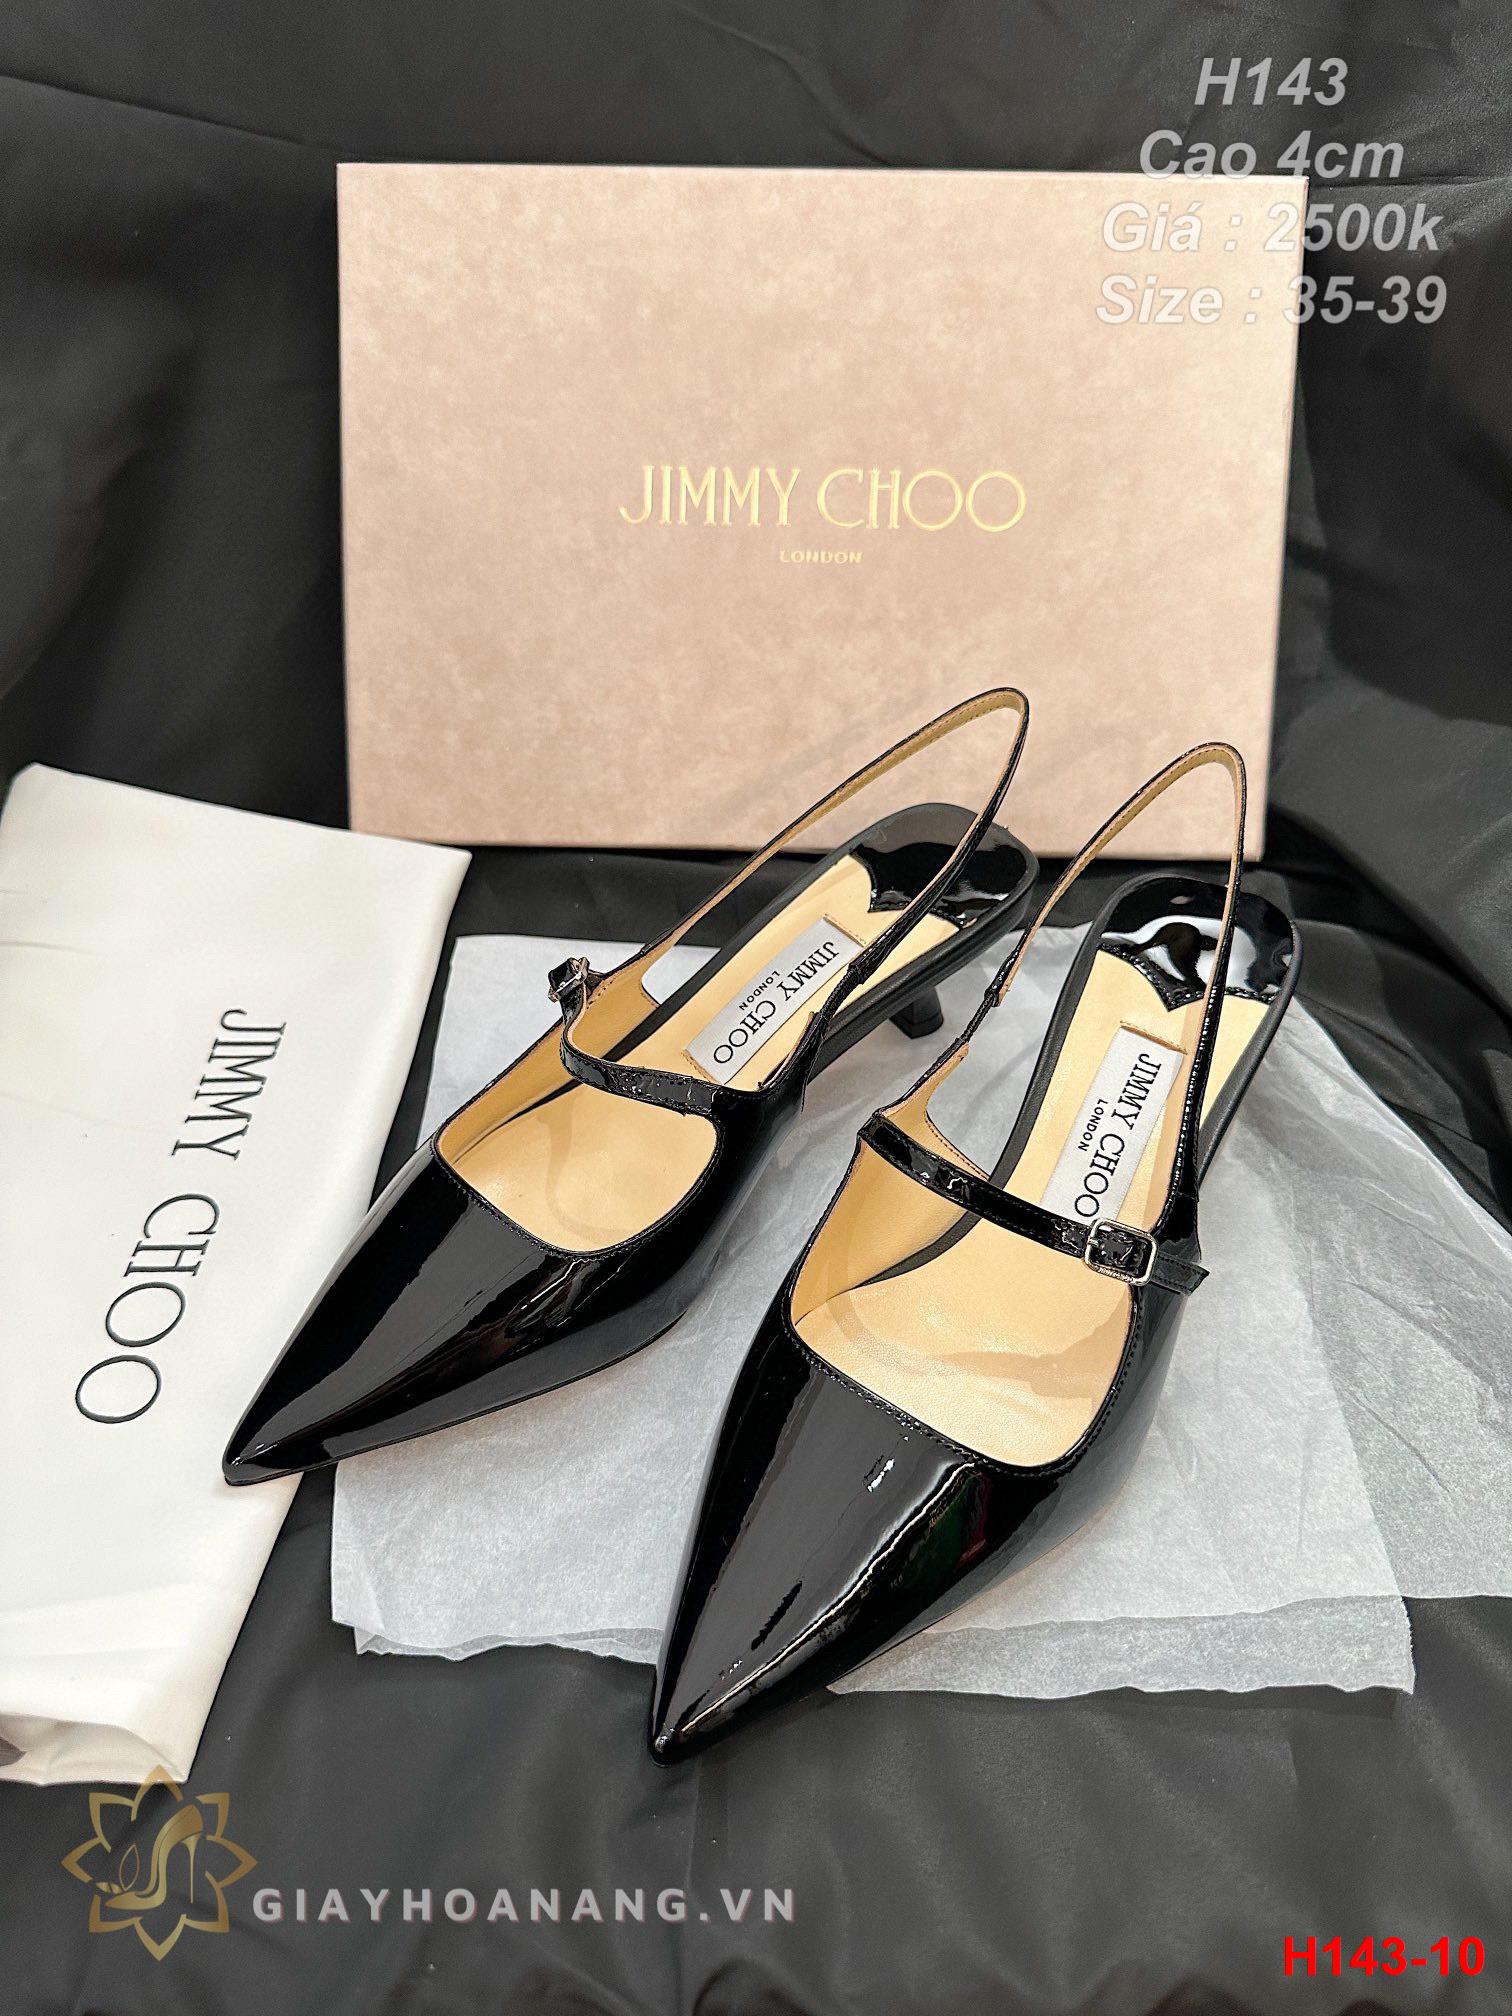 H143-10 Jimmy Choo sandal cao gót 4cm siêu cấp